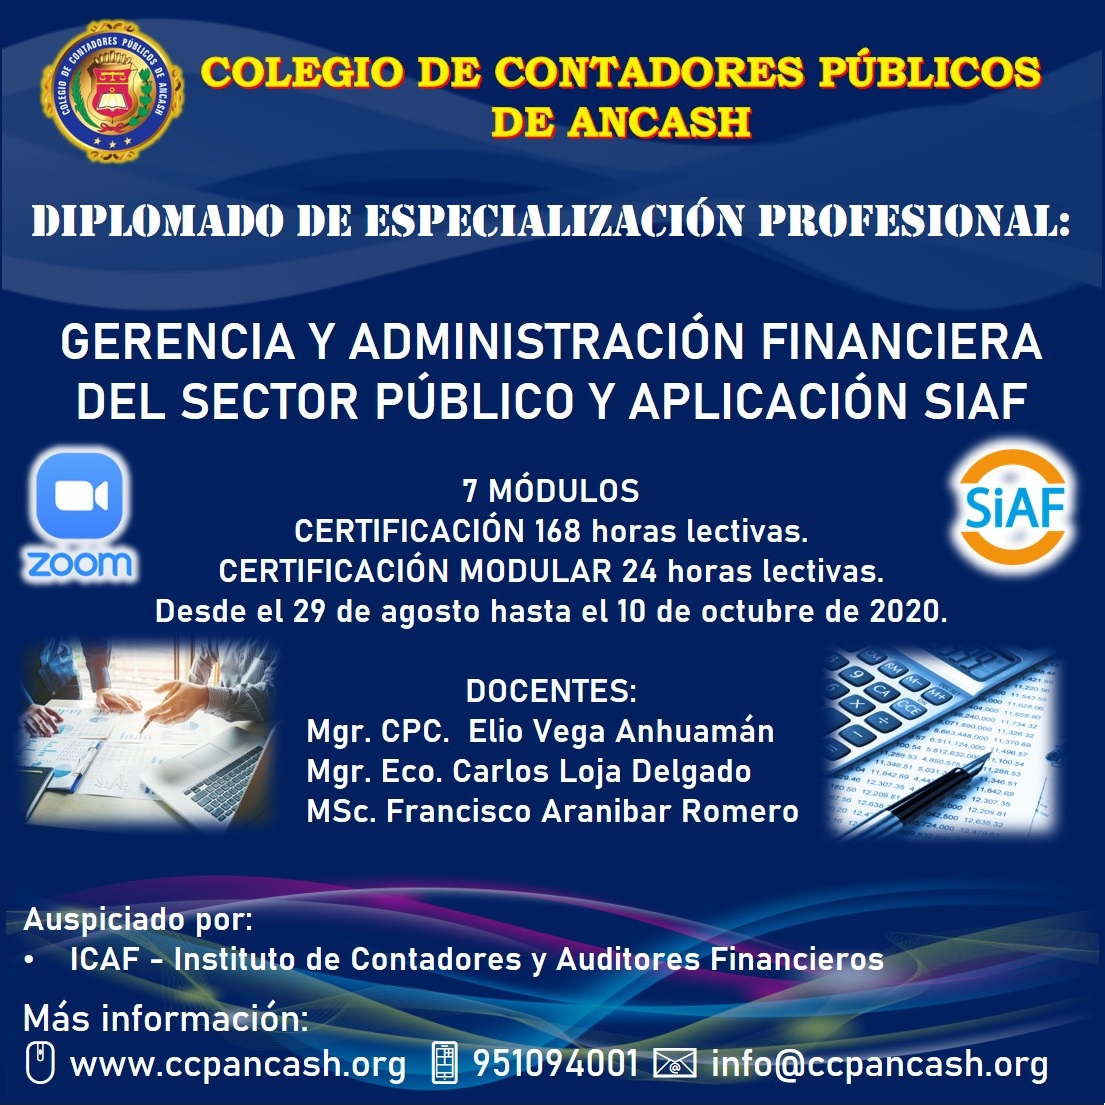 Diplomado de Especialización Profesional: Gerencia y Administración financiera del Sector Público y Aplicación SIAF